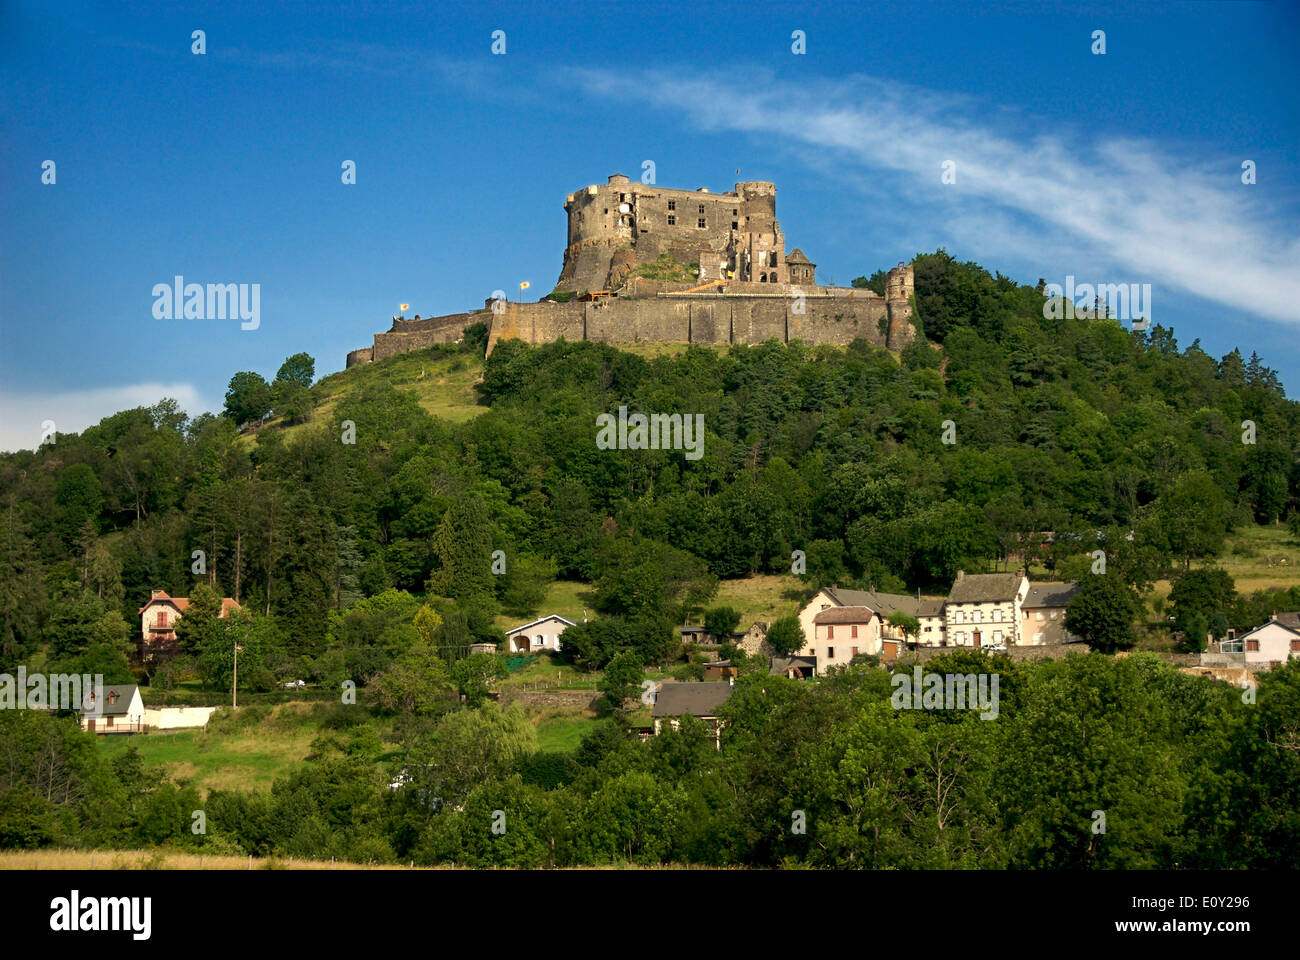 Chateau de Murol castle, Puy-de-Dome, Auvergne, France, Europe Stock Photo